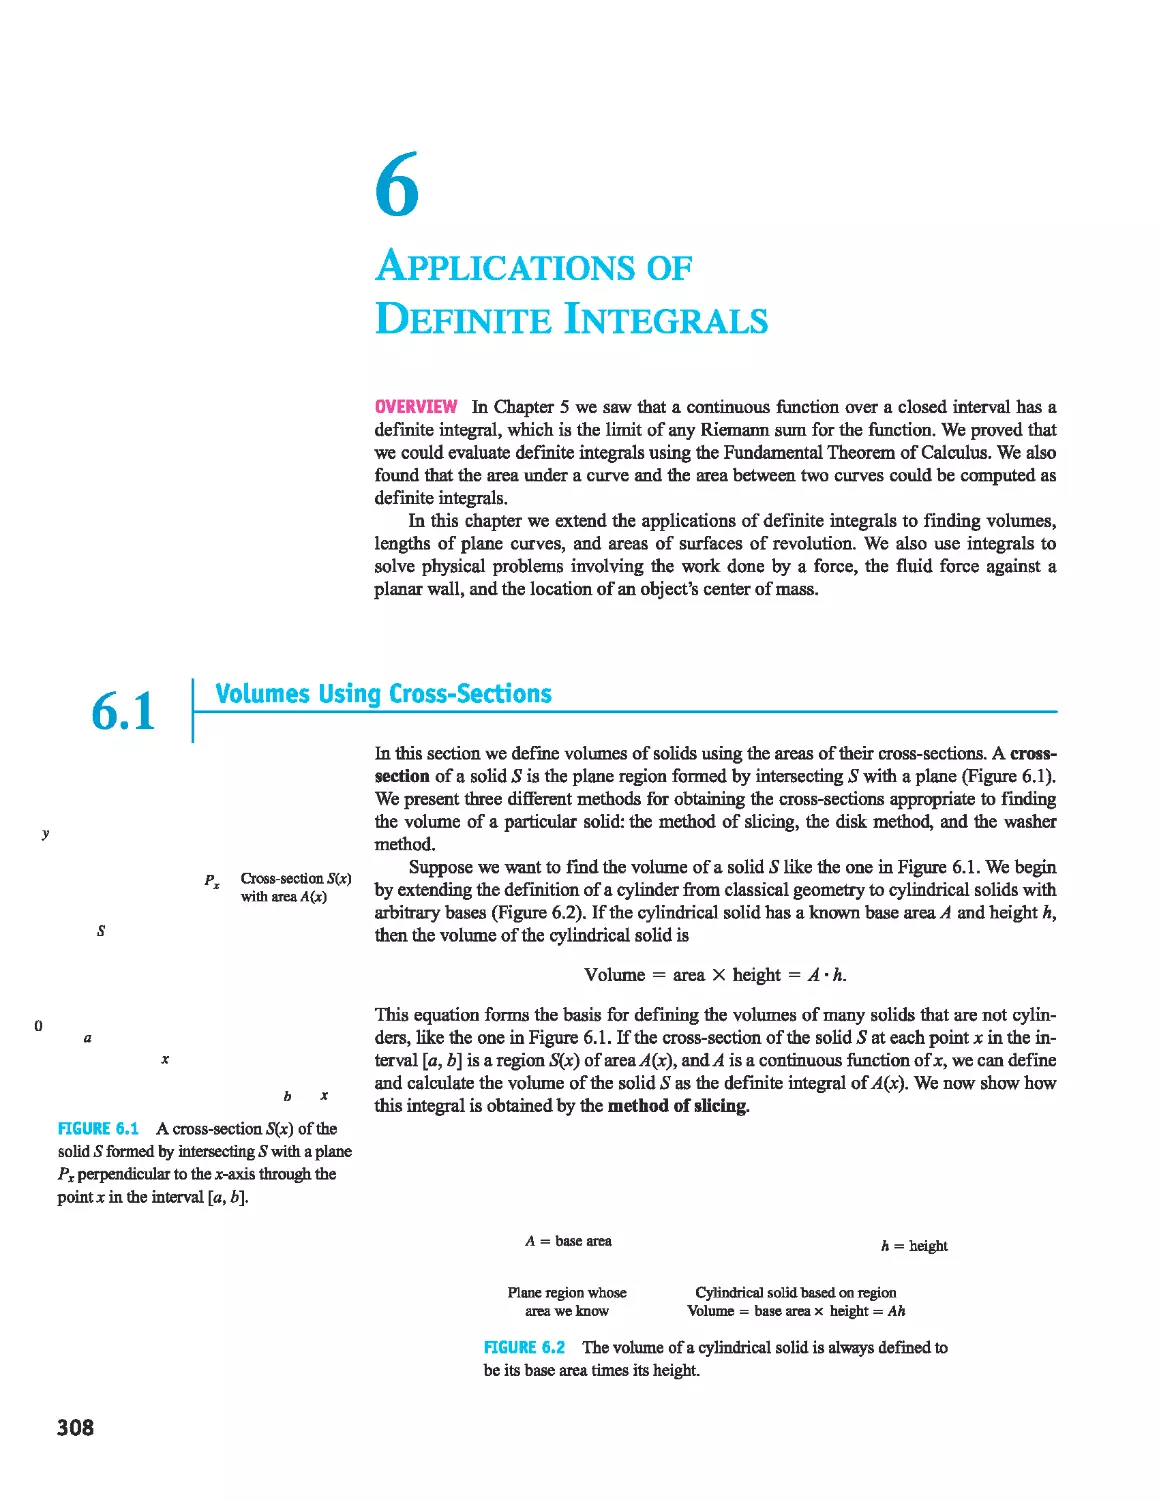 6 - Applications of Definite Integrals